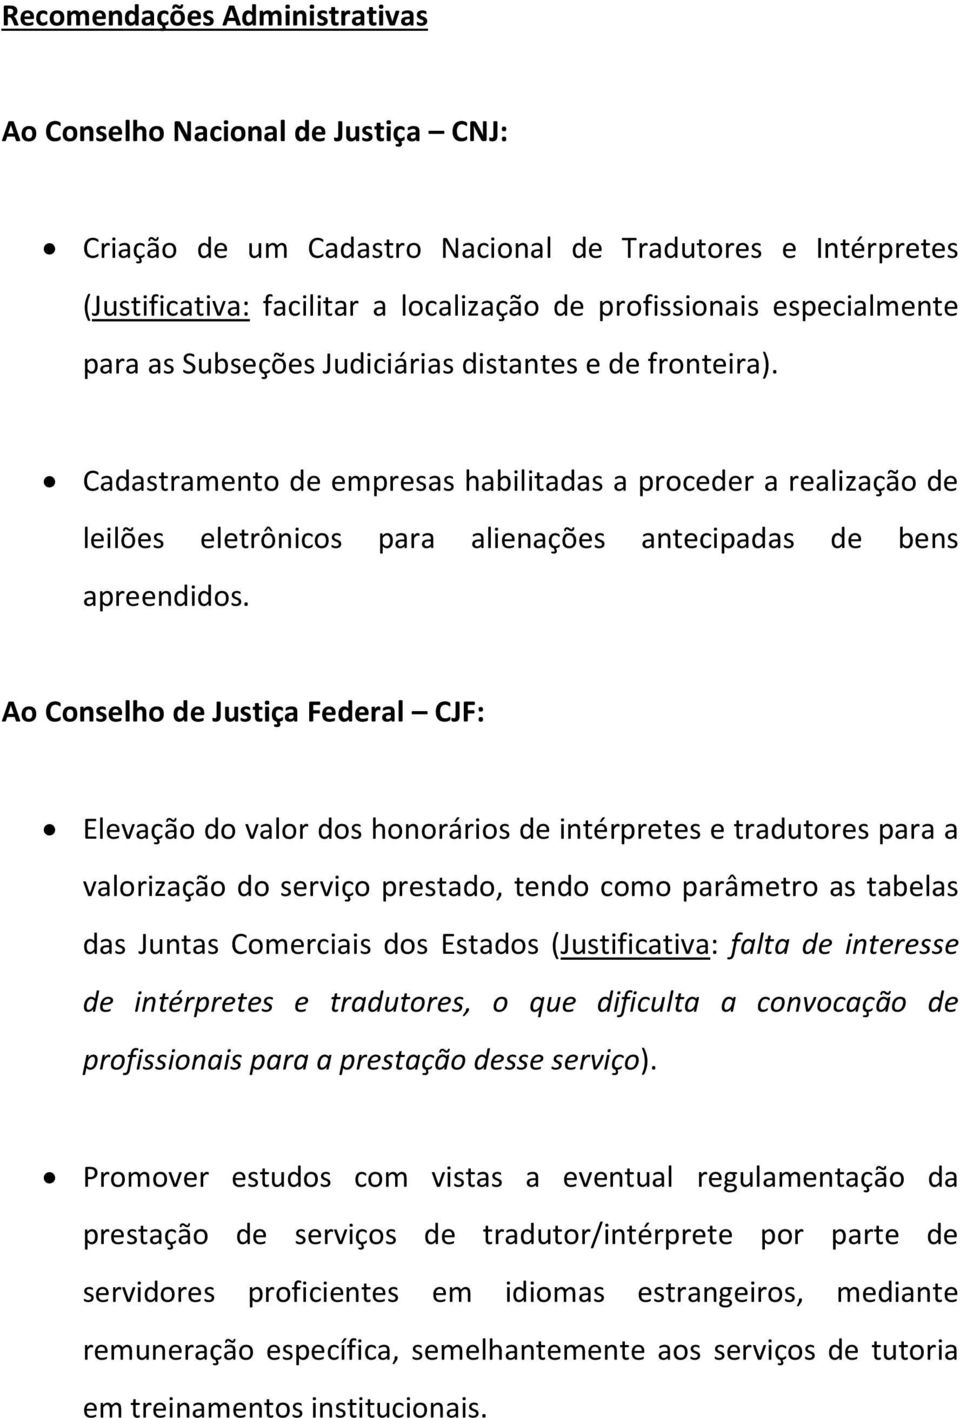 Ao Conselho de Justiça Federal CJF: Elevação do valor dos honorários de intérpretes e tradutores para a valorização do serviço prestado, tendo como parâmetro as tabelas das Juntas Comerciais dos